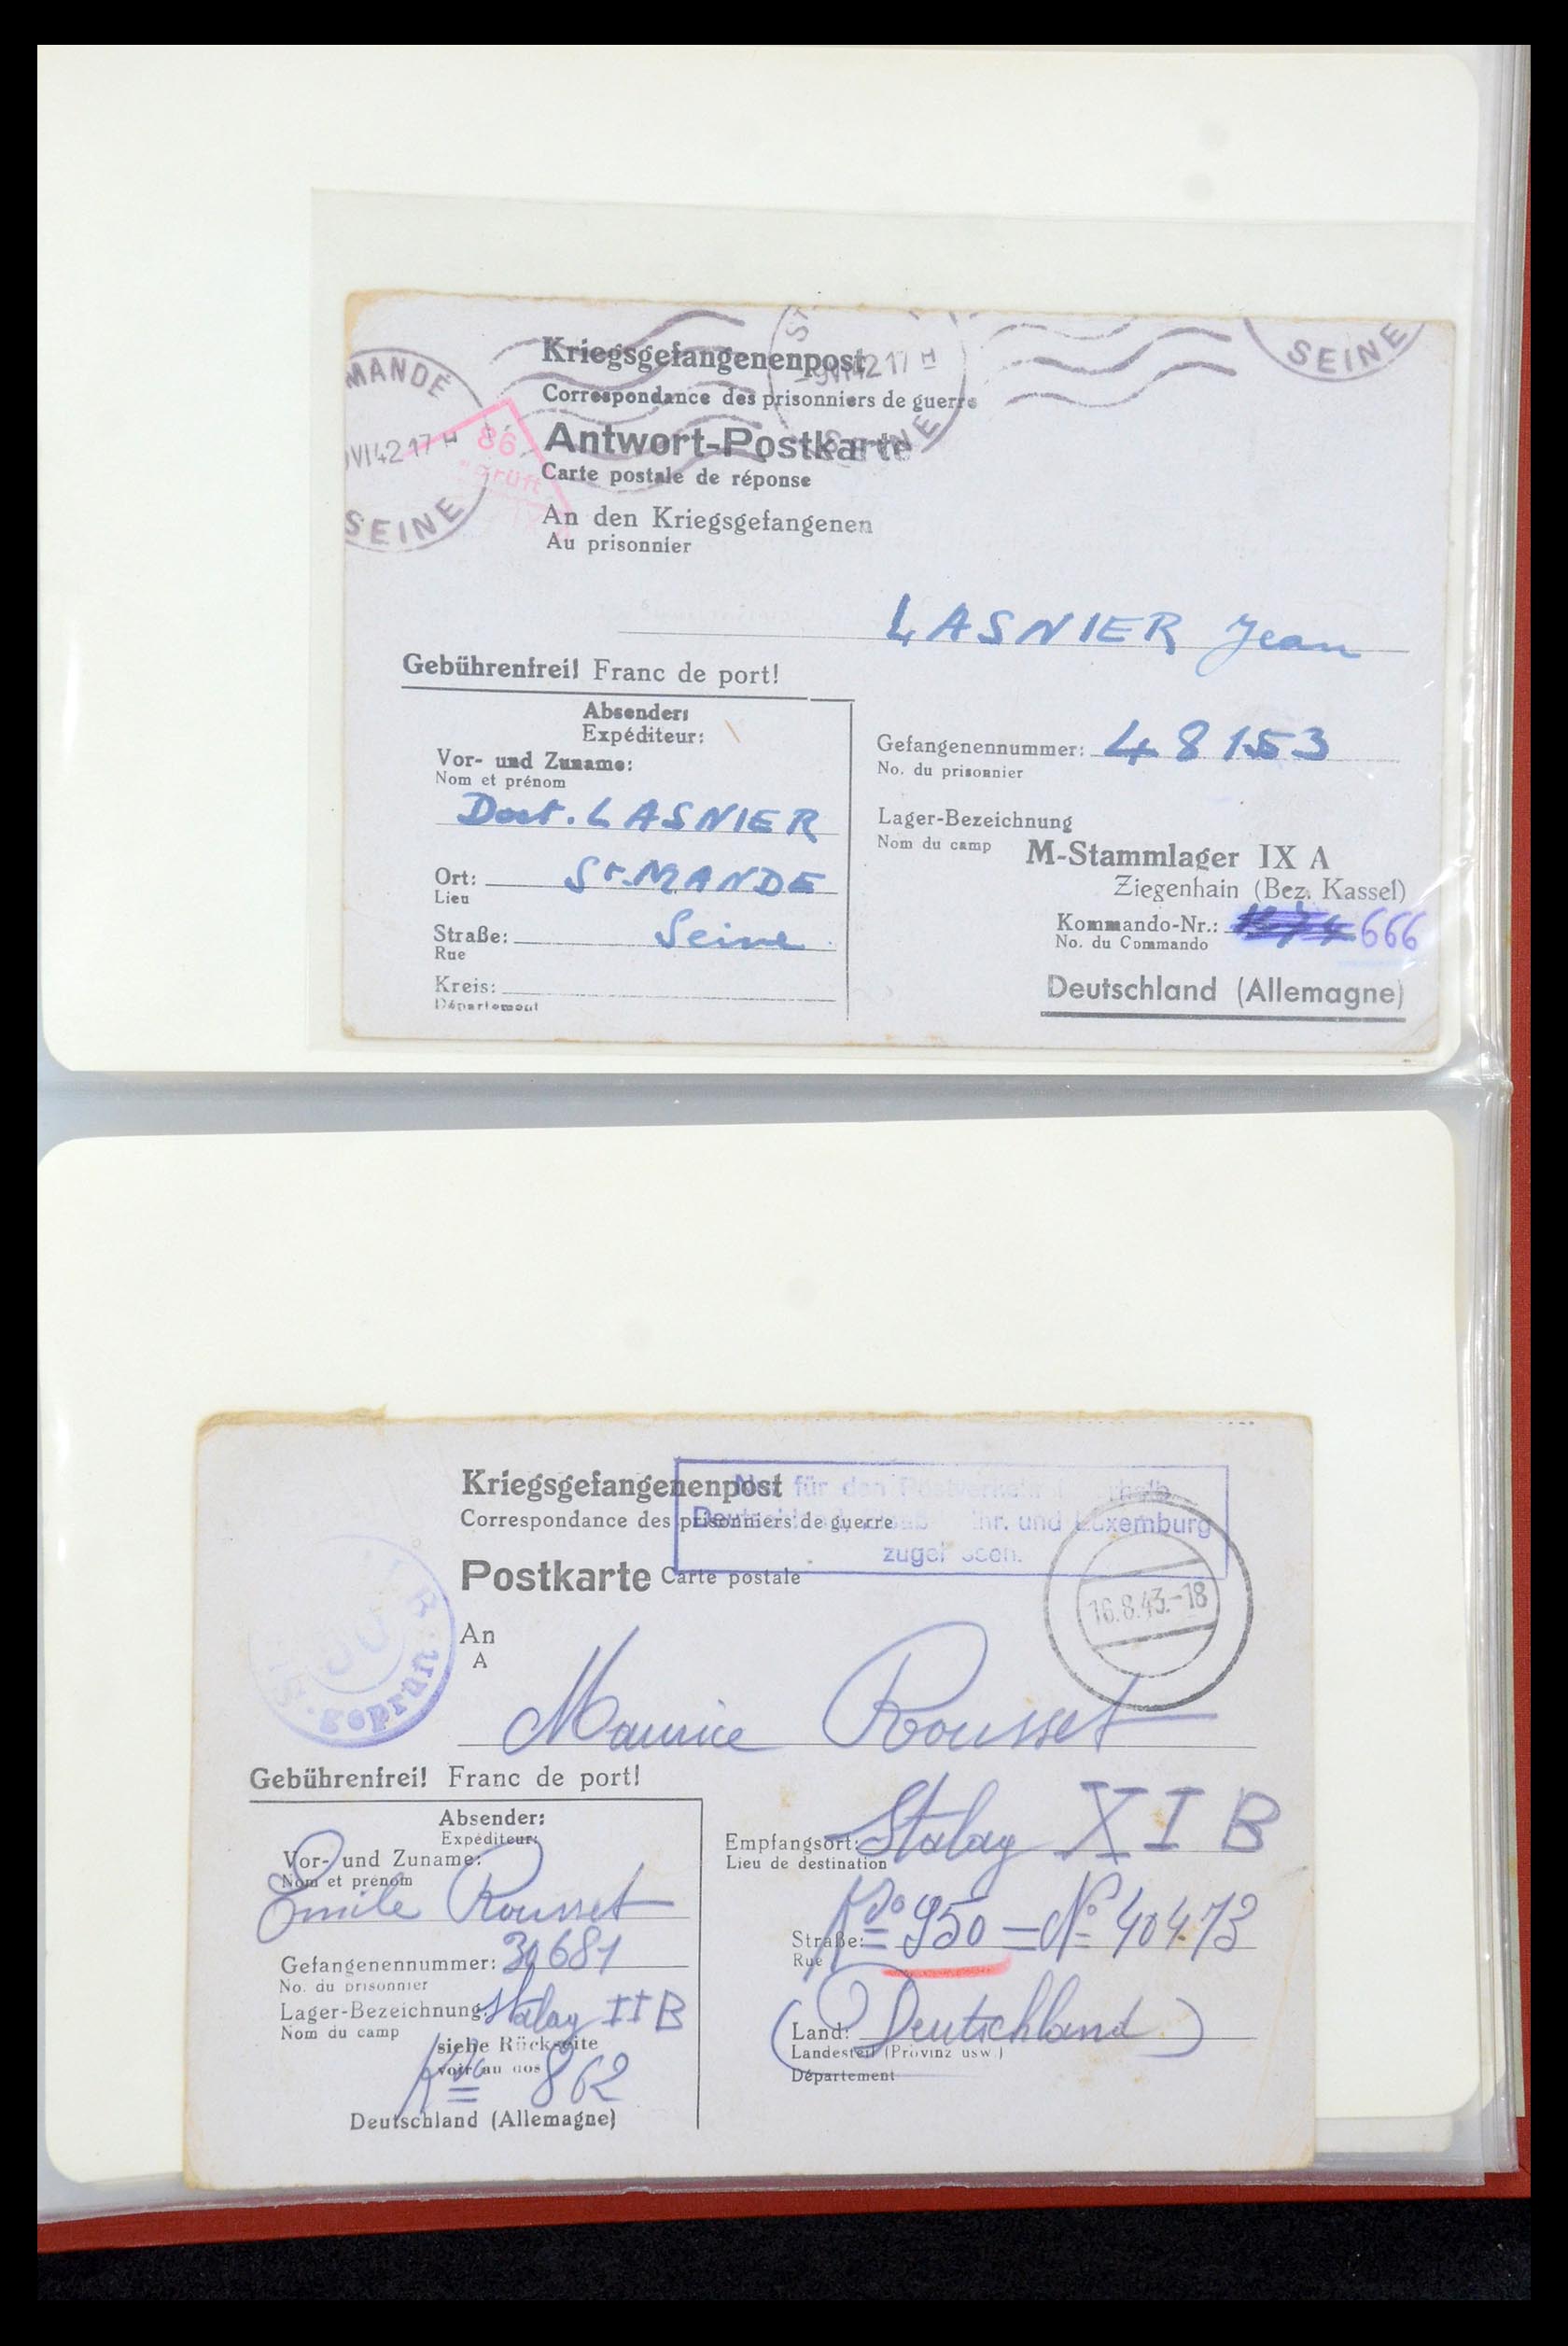 35599 027 - Stamp Collection 35599 Germany prisoner of war cards 1940-1944.